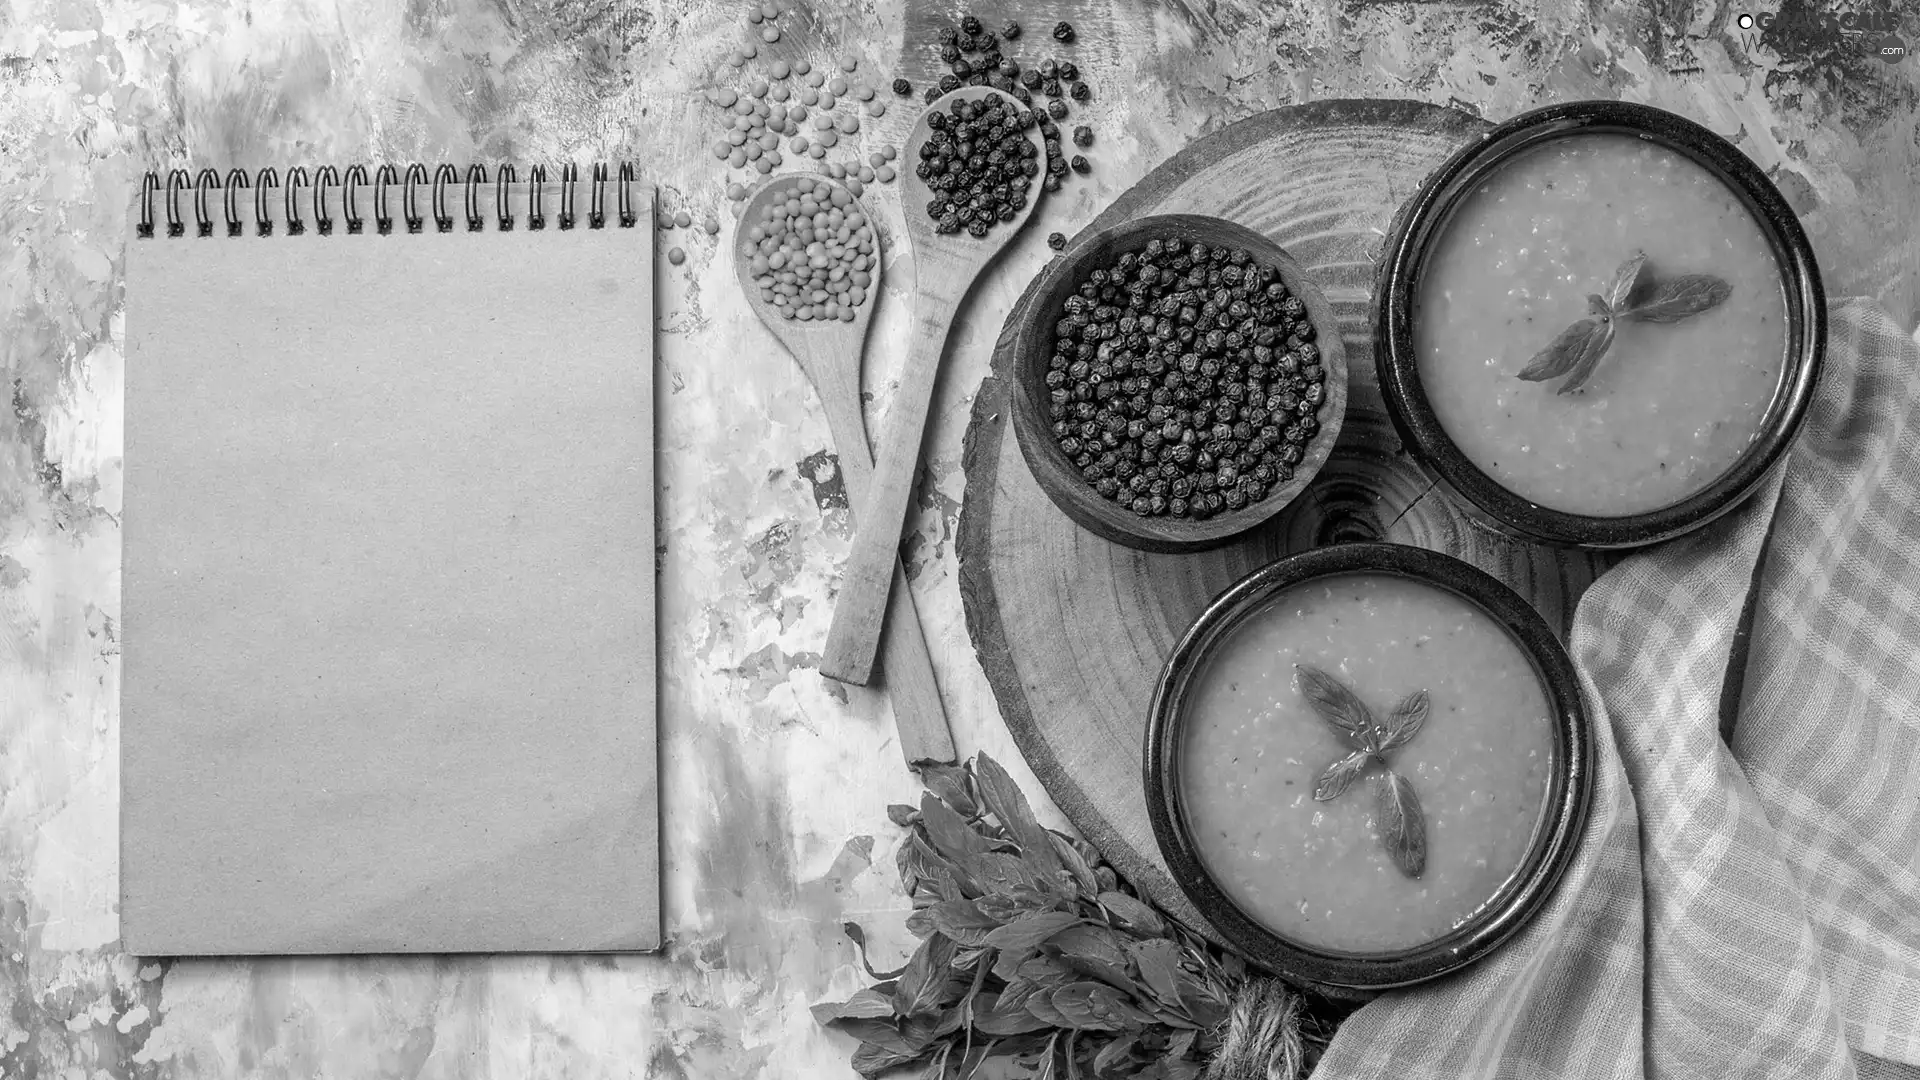 Lentil, pepper, note-book, Wood, Spoons, bowls, soup, rubber